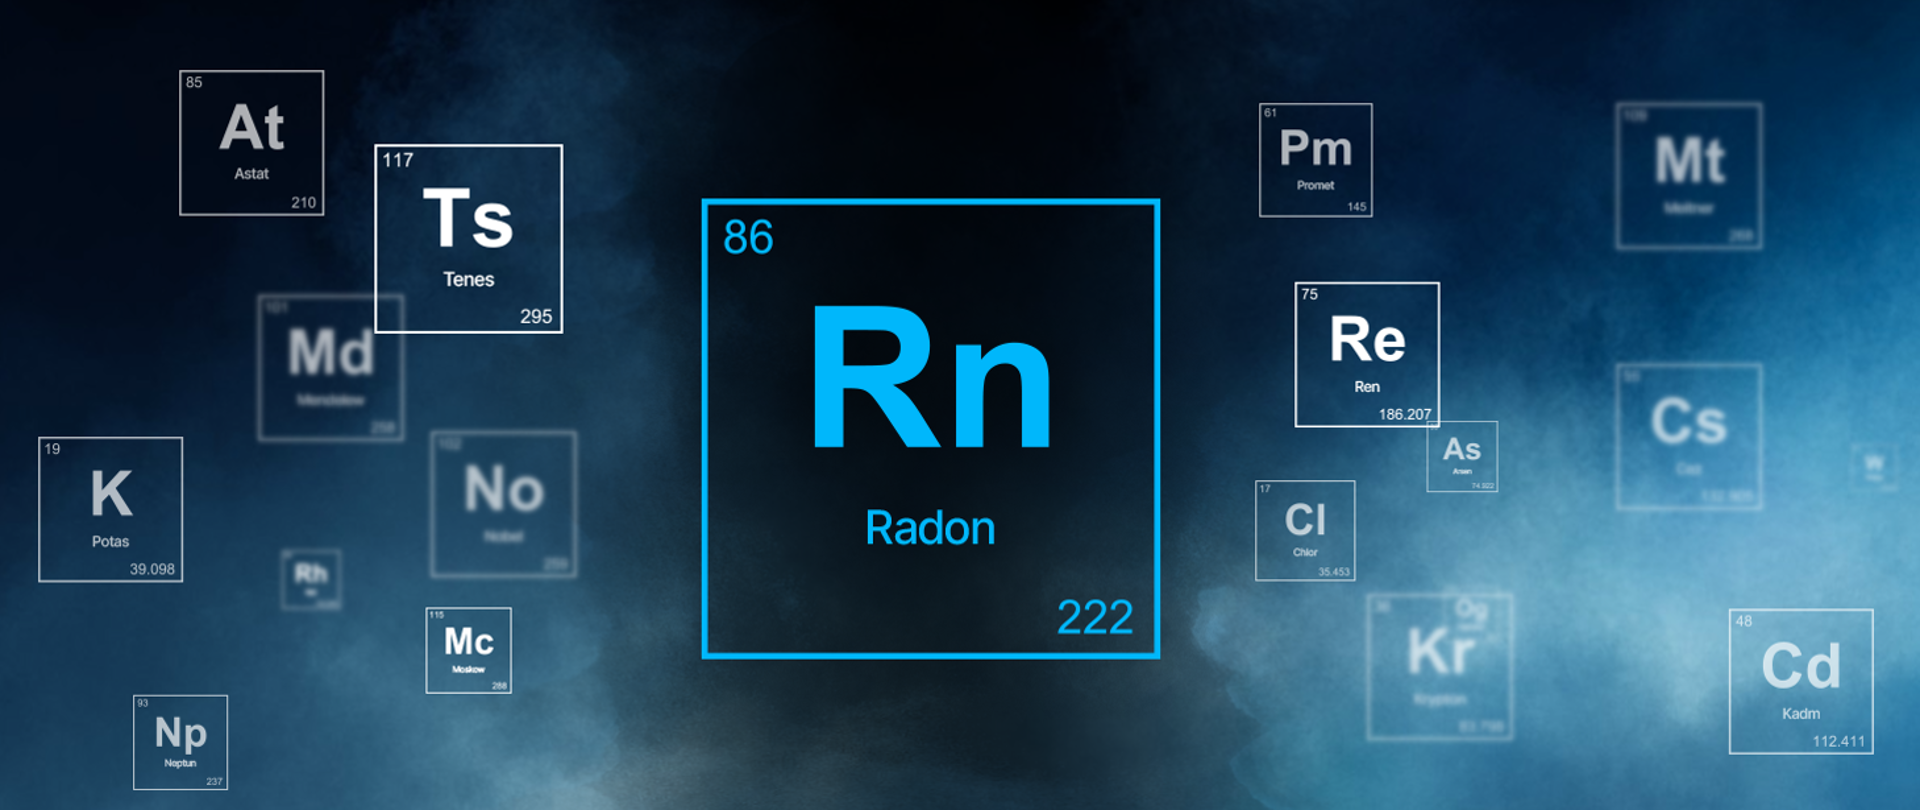 Obraz prezentujący symbol Radonu - Rn